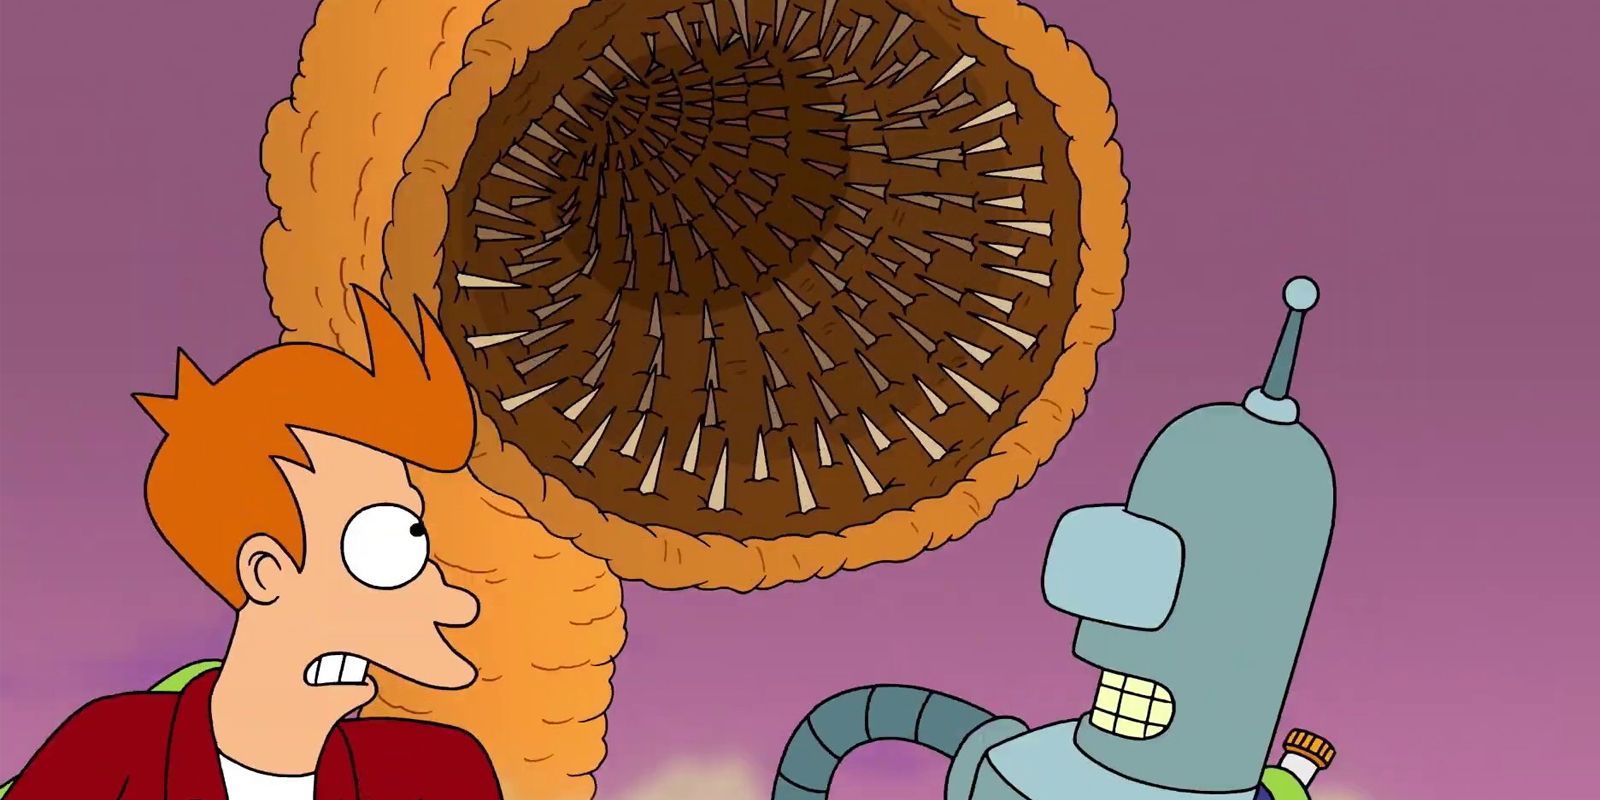 Fry und Bender fliehen vor einem Sandwurm in Futurama